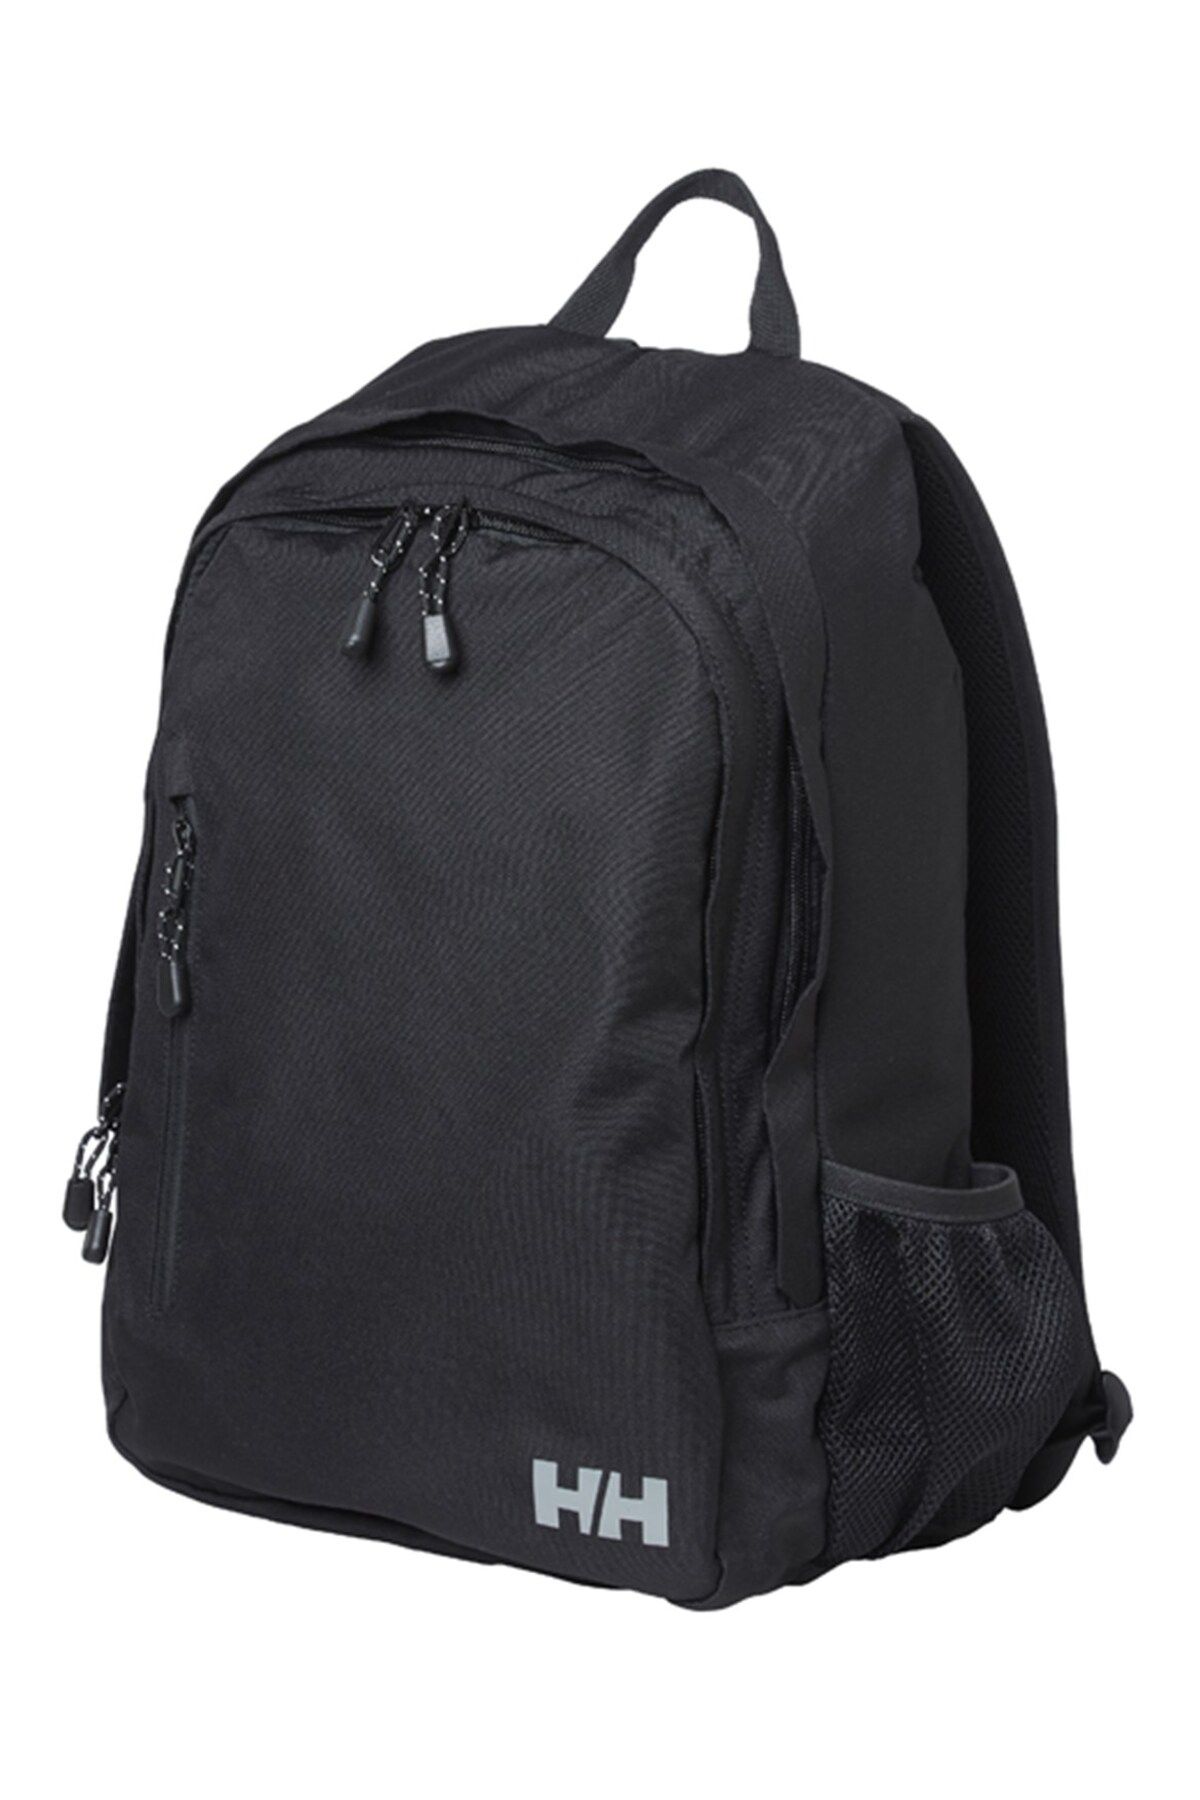 Helly Hansen Unisex Backpack 30 L Sırt Çantası Hha.67386